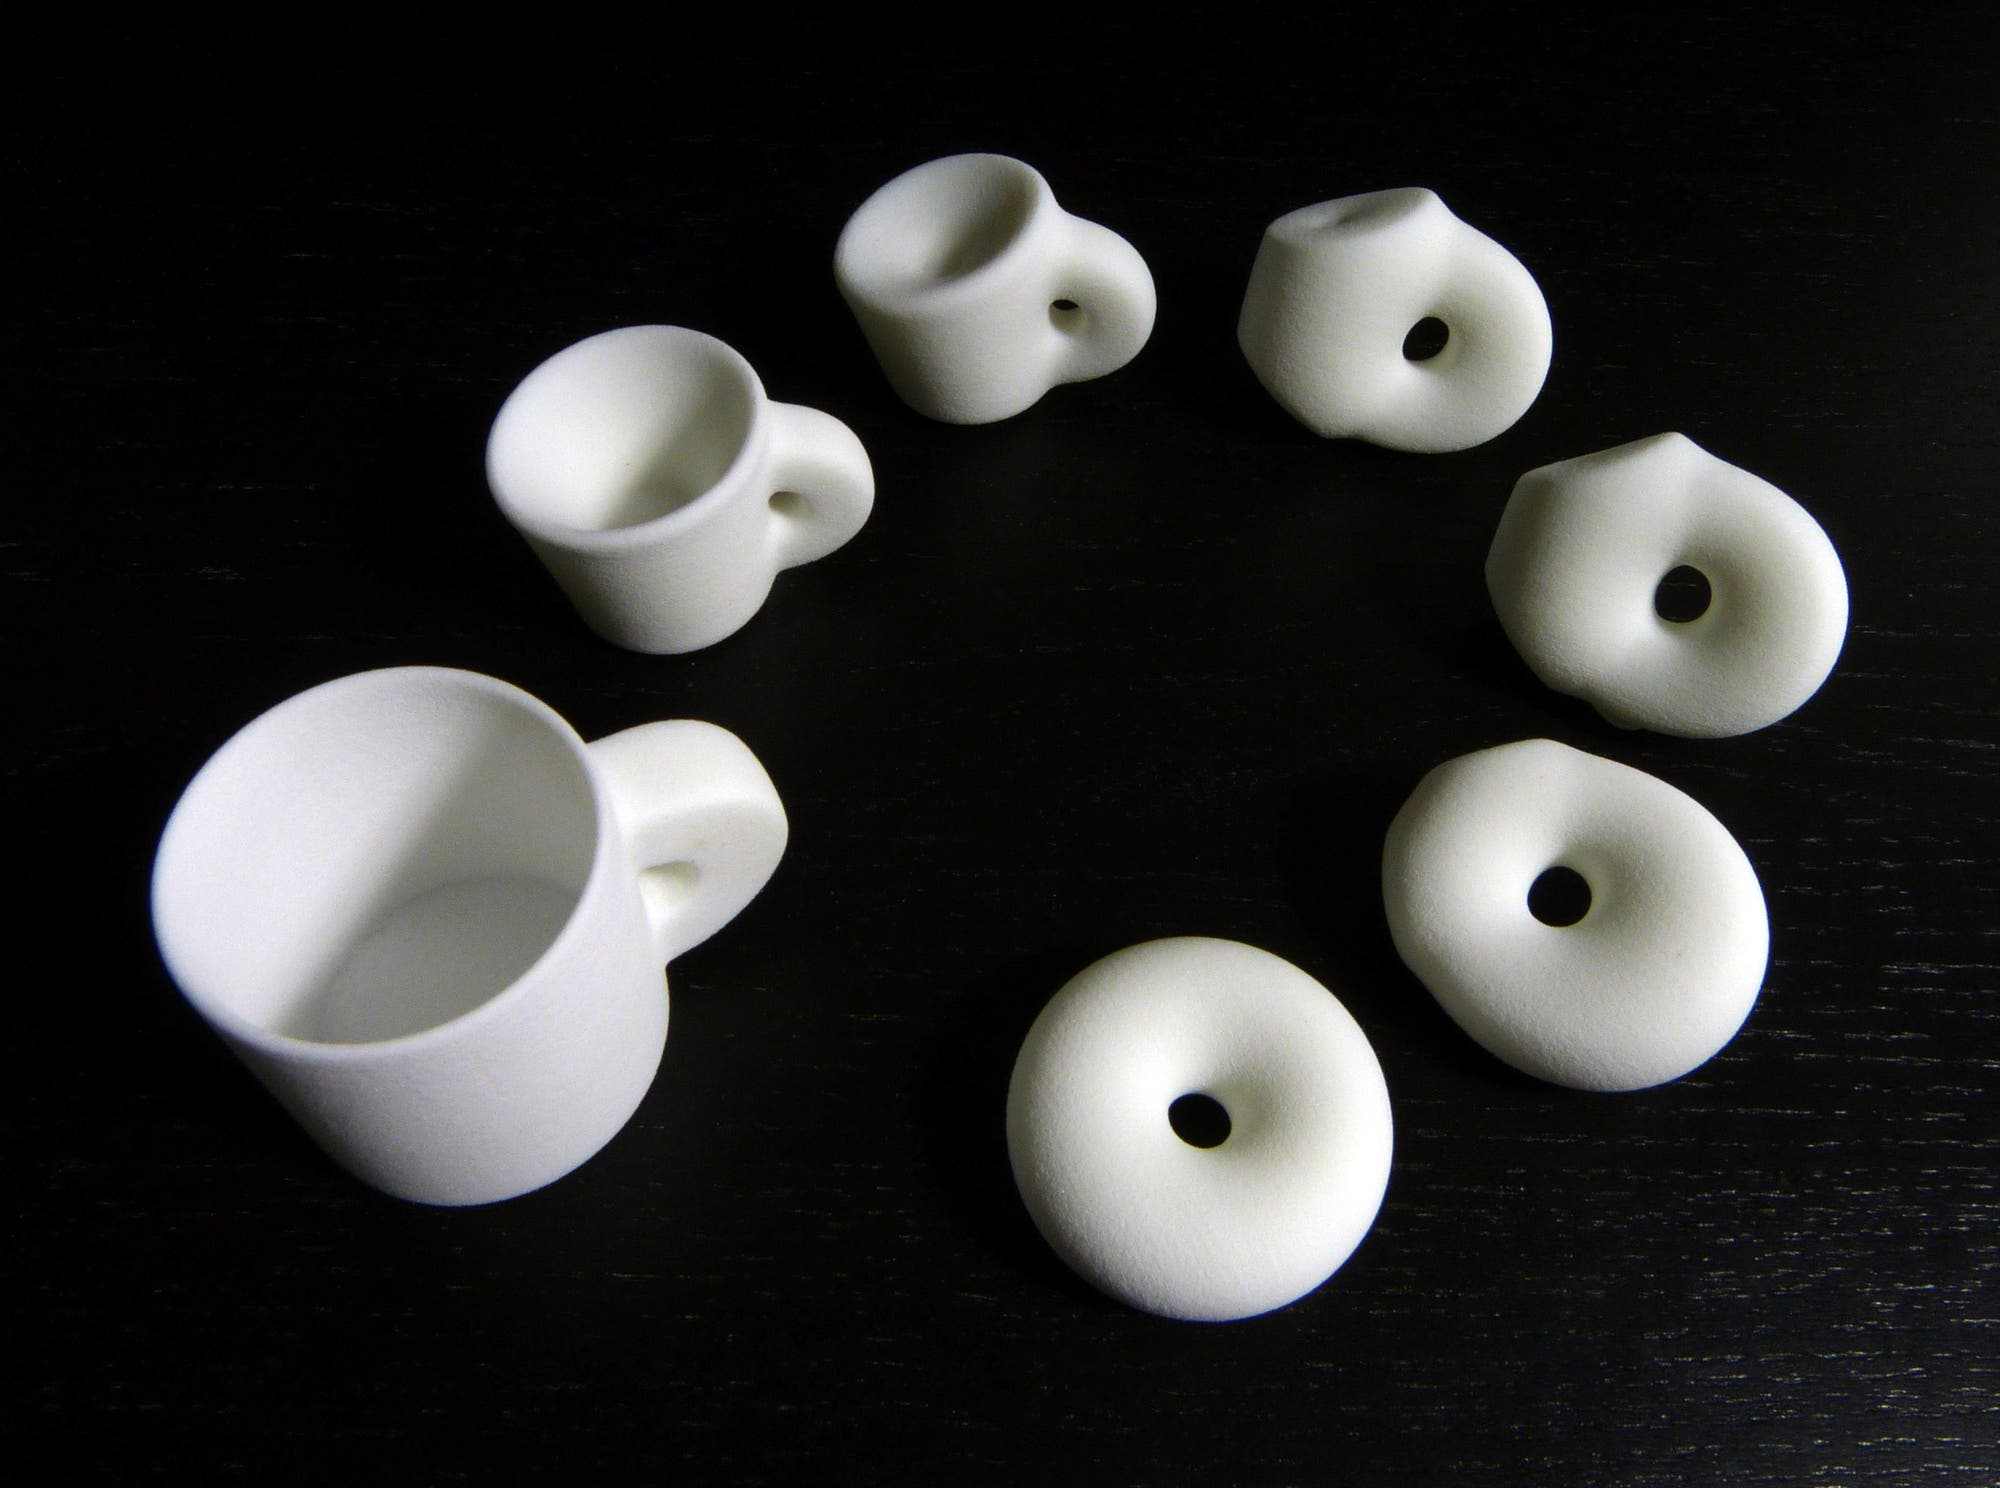 Durch einfaches Kneten kann man eine Tasse zu einem Donut verformen. Darum sind beide Objekte topologisch gesehen gleich.